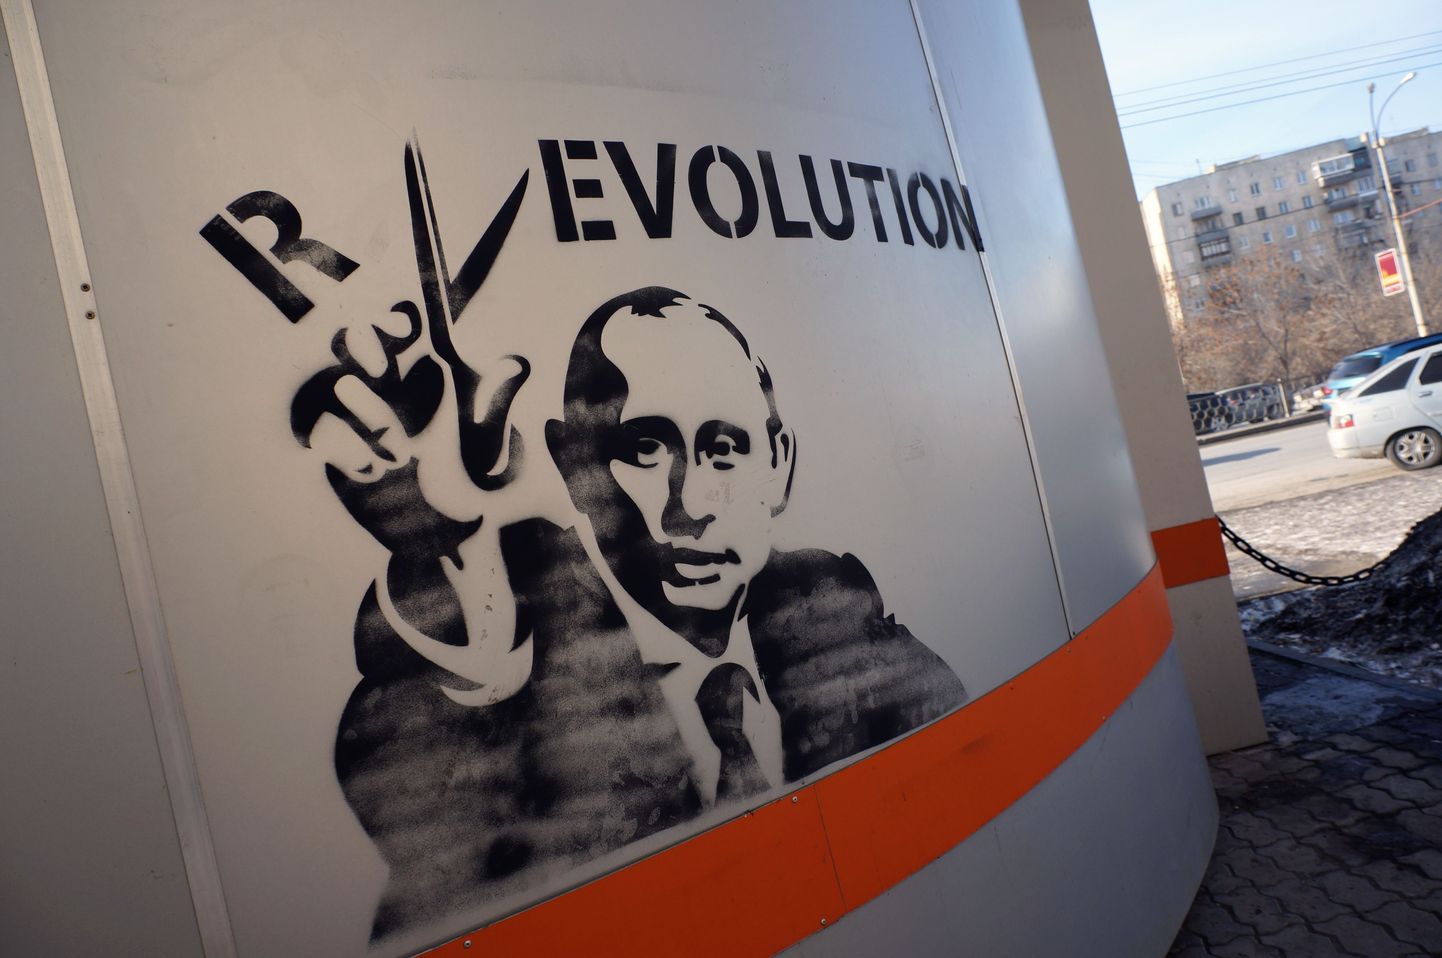 Putin teeb väikse kääriliigutusega revolutsioonist evolutsiooni.